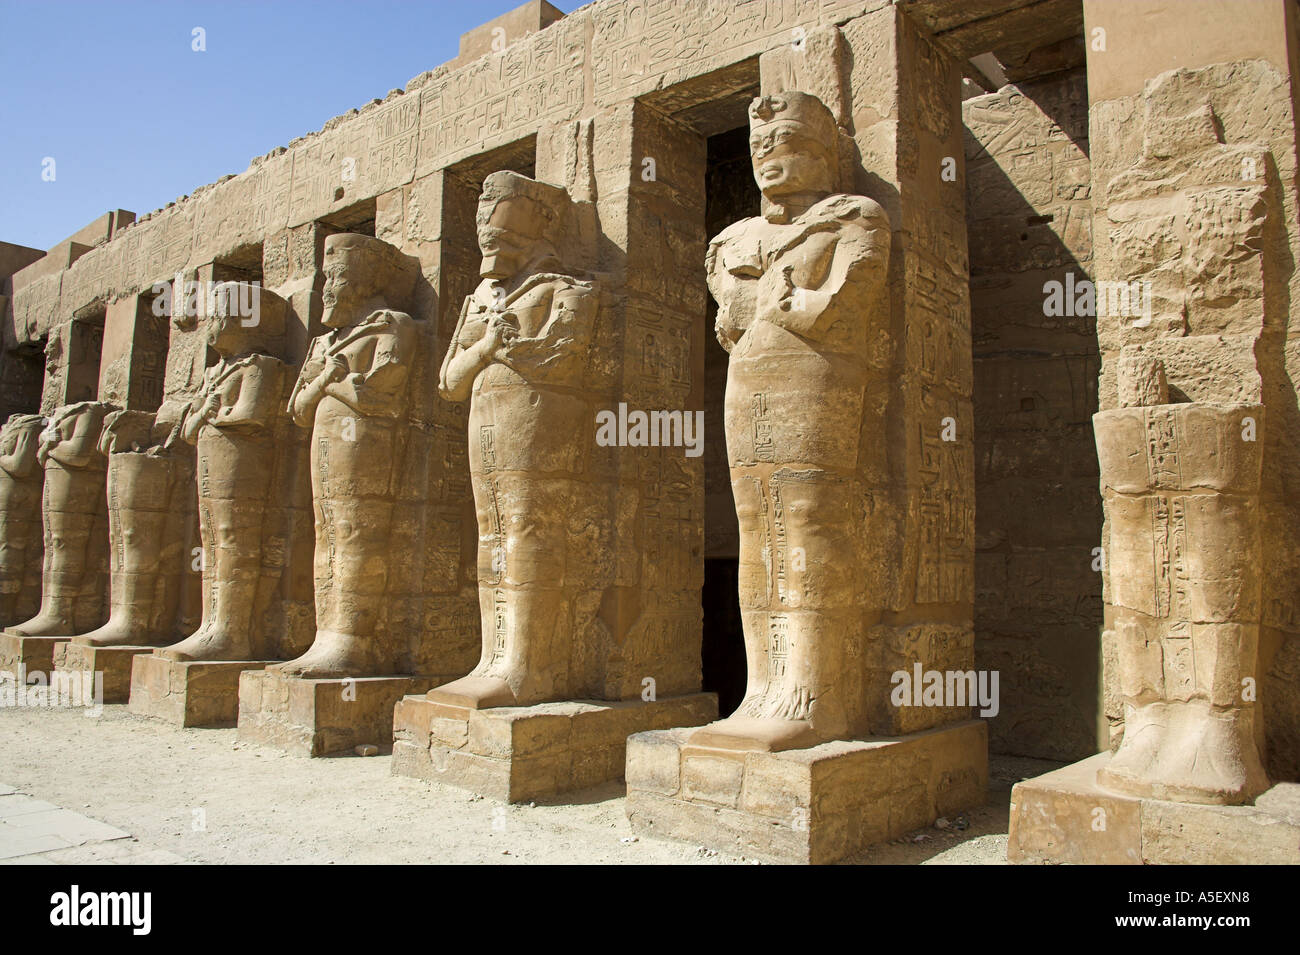 Statues of Egyptian Pharoahs, Temple of Karnak, Luxor, Egypt Stock Photo